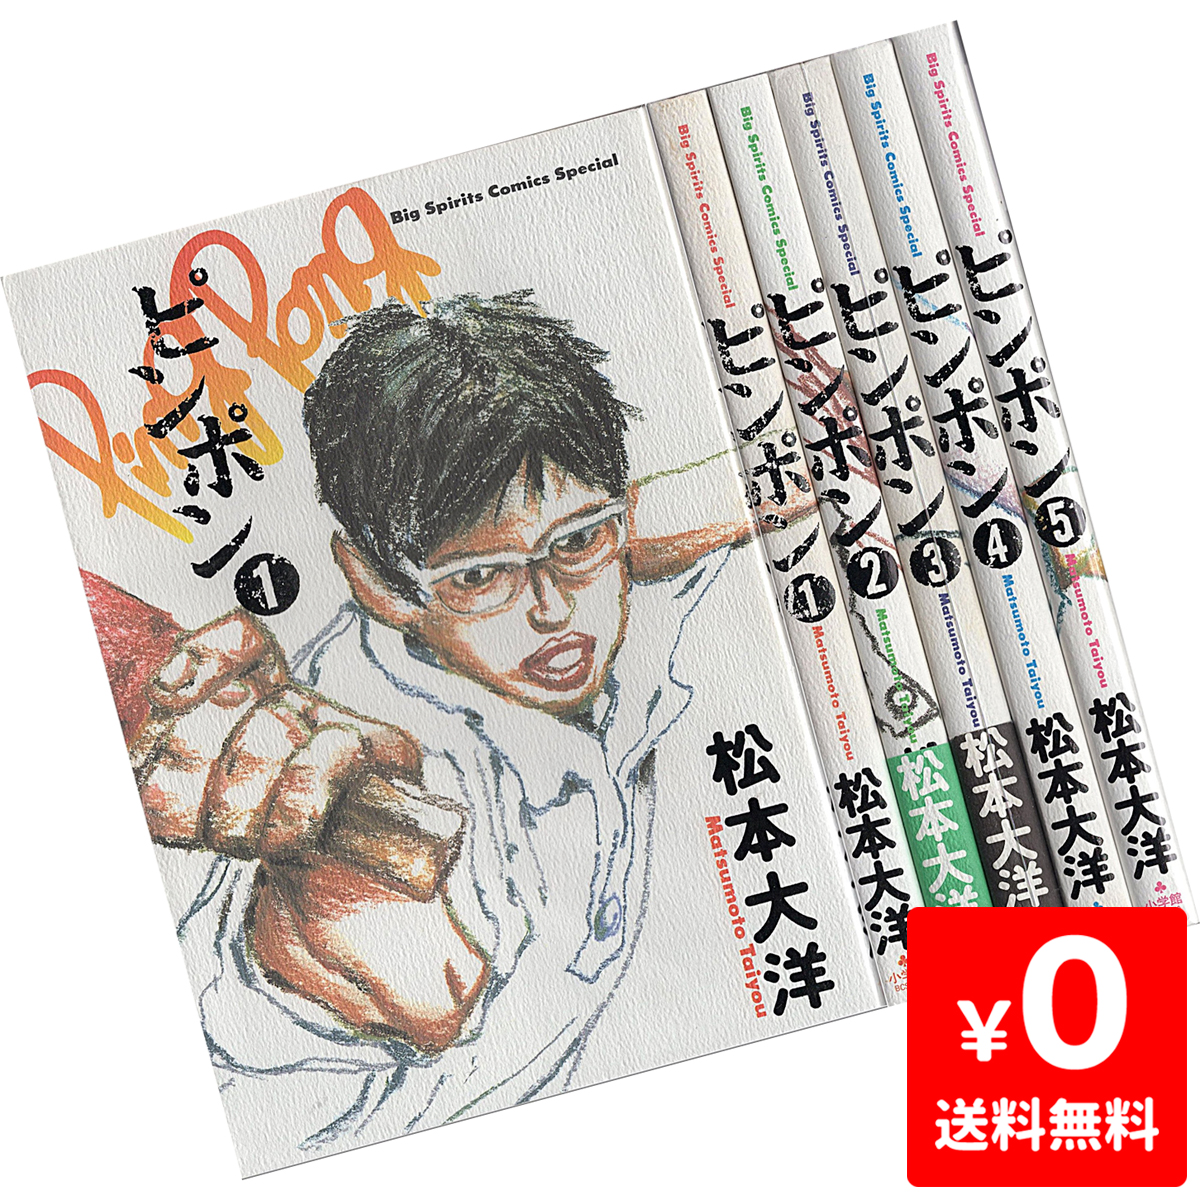 楽天市場 ピンポン 1 5巻 コミック セット 中古 Iimo リユース店